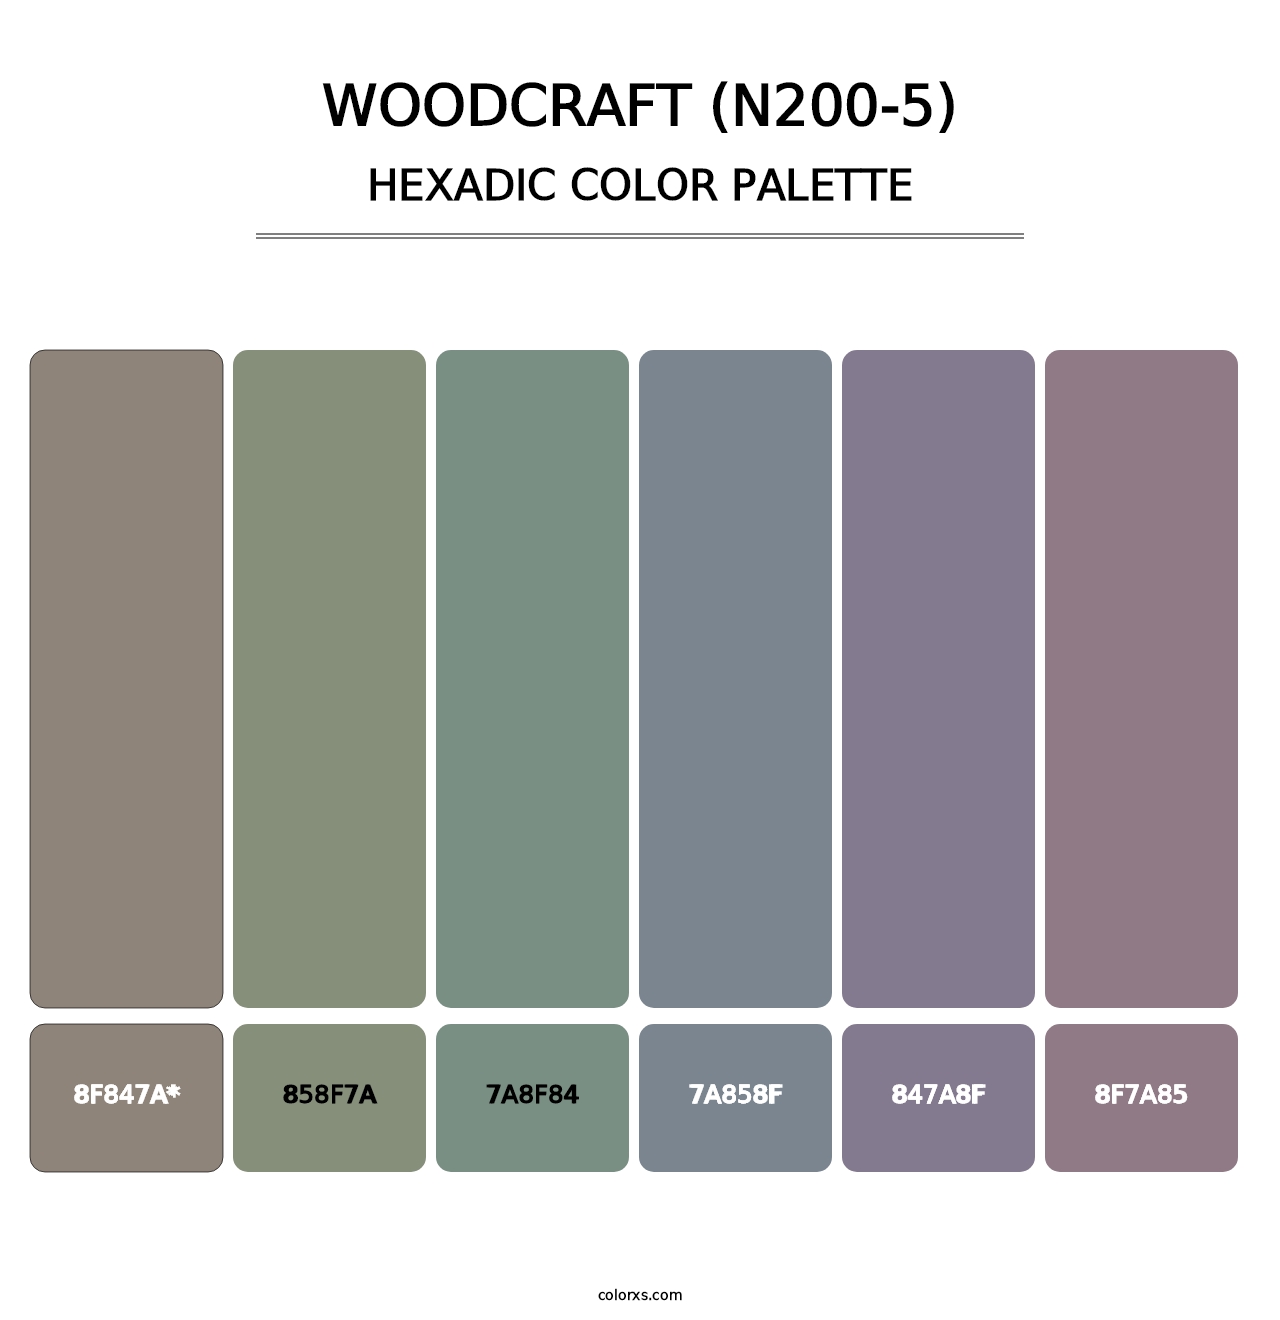 Woodcraft (N200-5) - Hexadic Color Palette